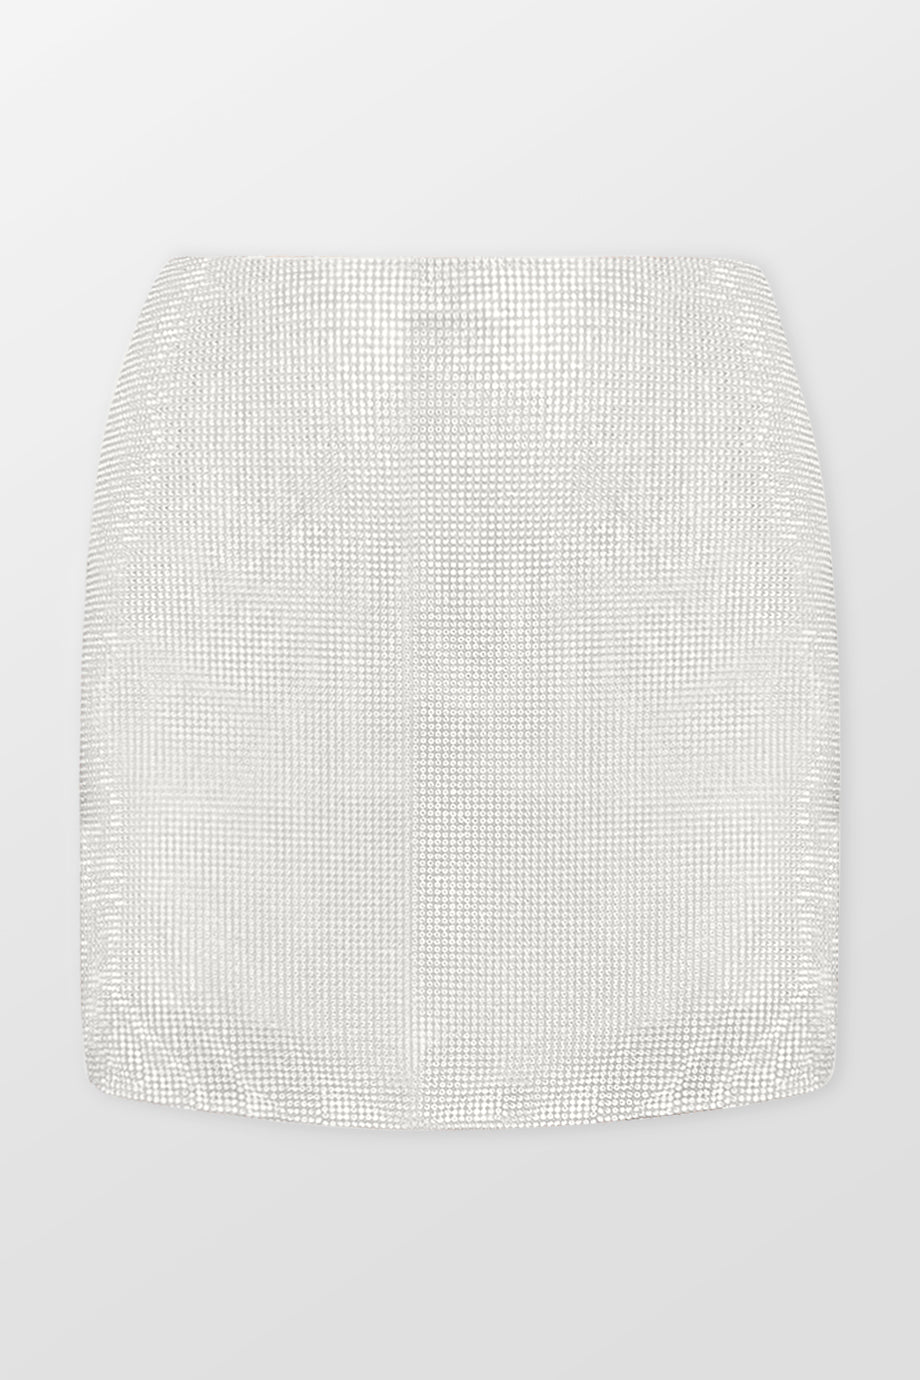 A-Line Crystal Mini Skirt